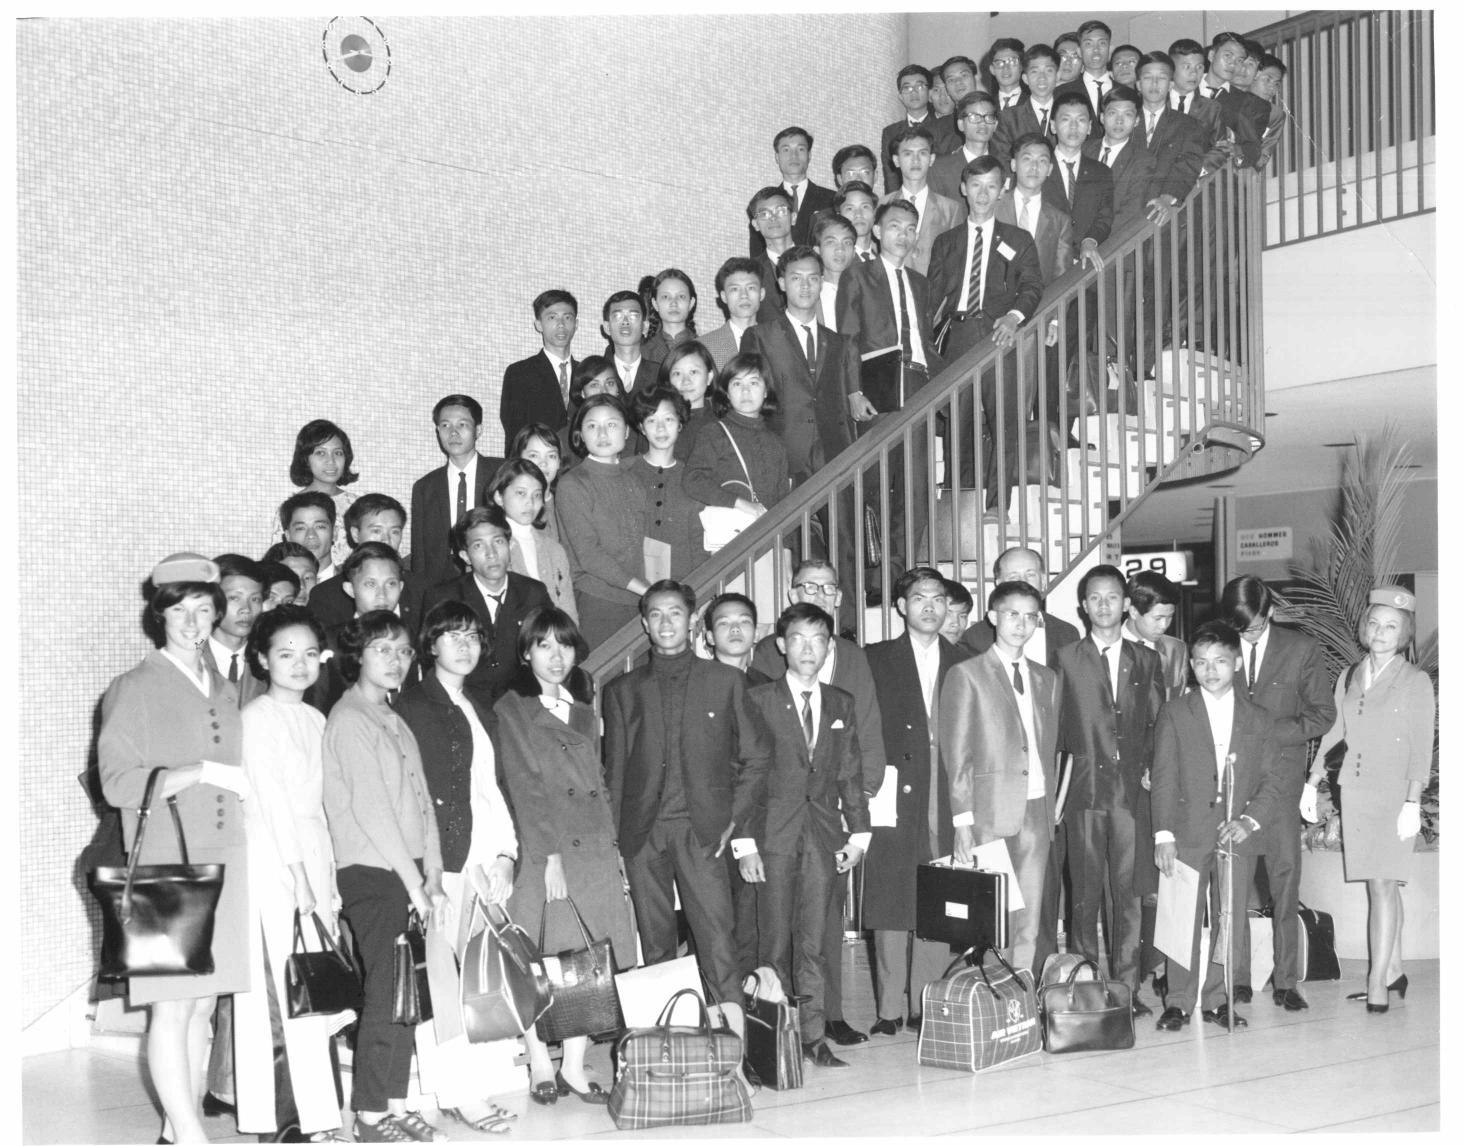 Sinh viên du học với học bổng Leadership. Nhóm II tại phi trường Los Angeles, 28 tháng 3, 1972. Nguồn: Học bổng Leadership.